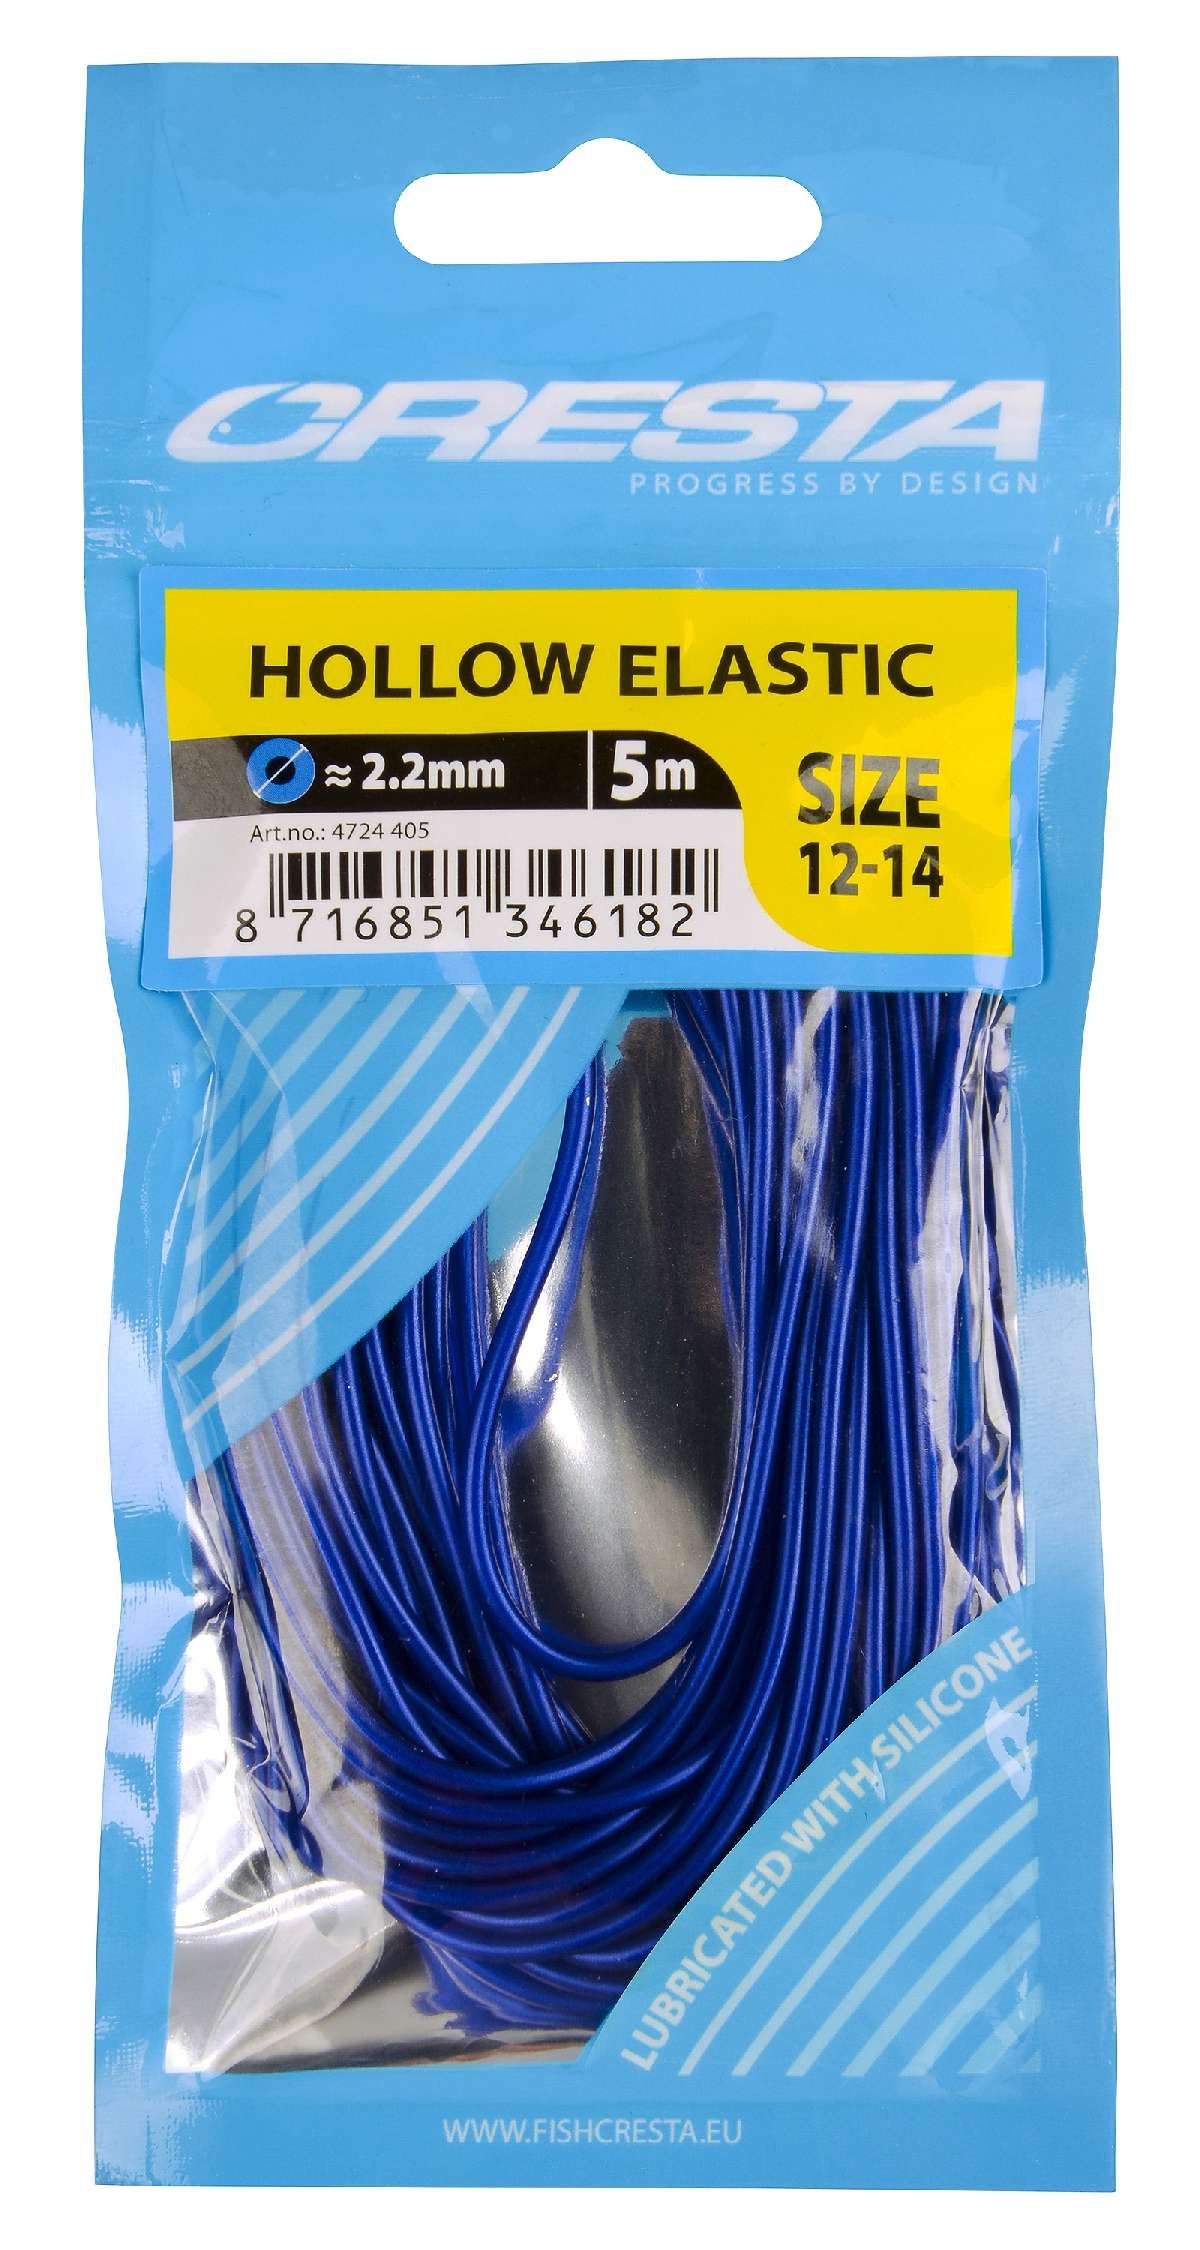 Cresta Hollow Elastic 2.2 mm  5 m Blue